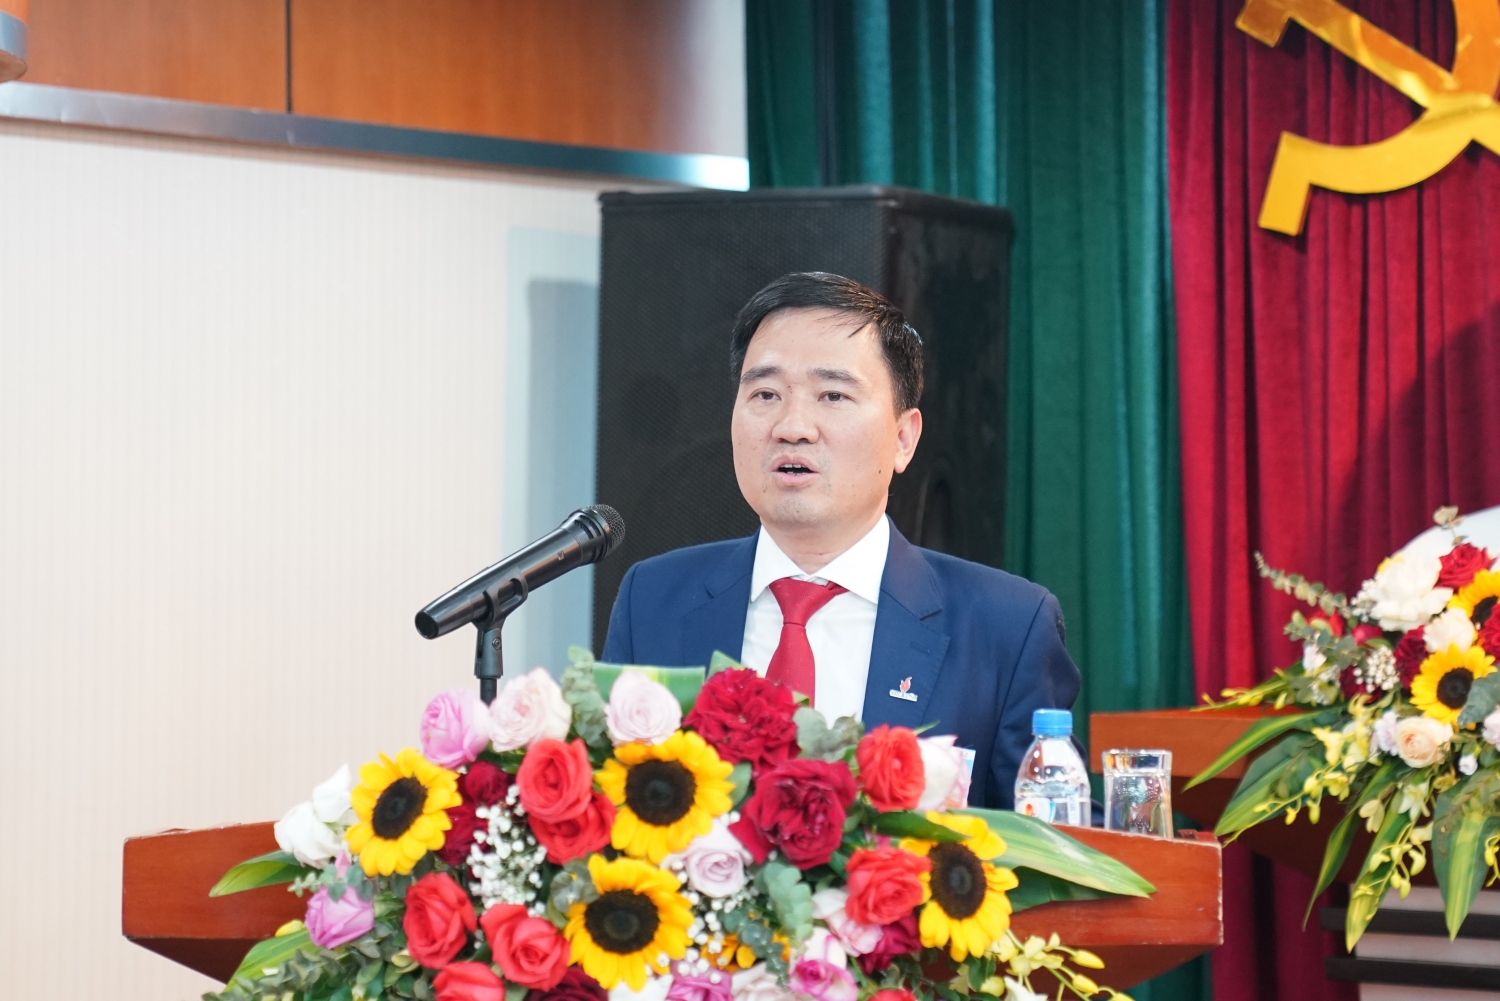 TS. Vũ Anh Tuấn - Phó Chủ tịch Công đoàn Dầu khí Việt Nam phát biểu chỉ đạo tại Đại hội.